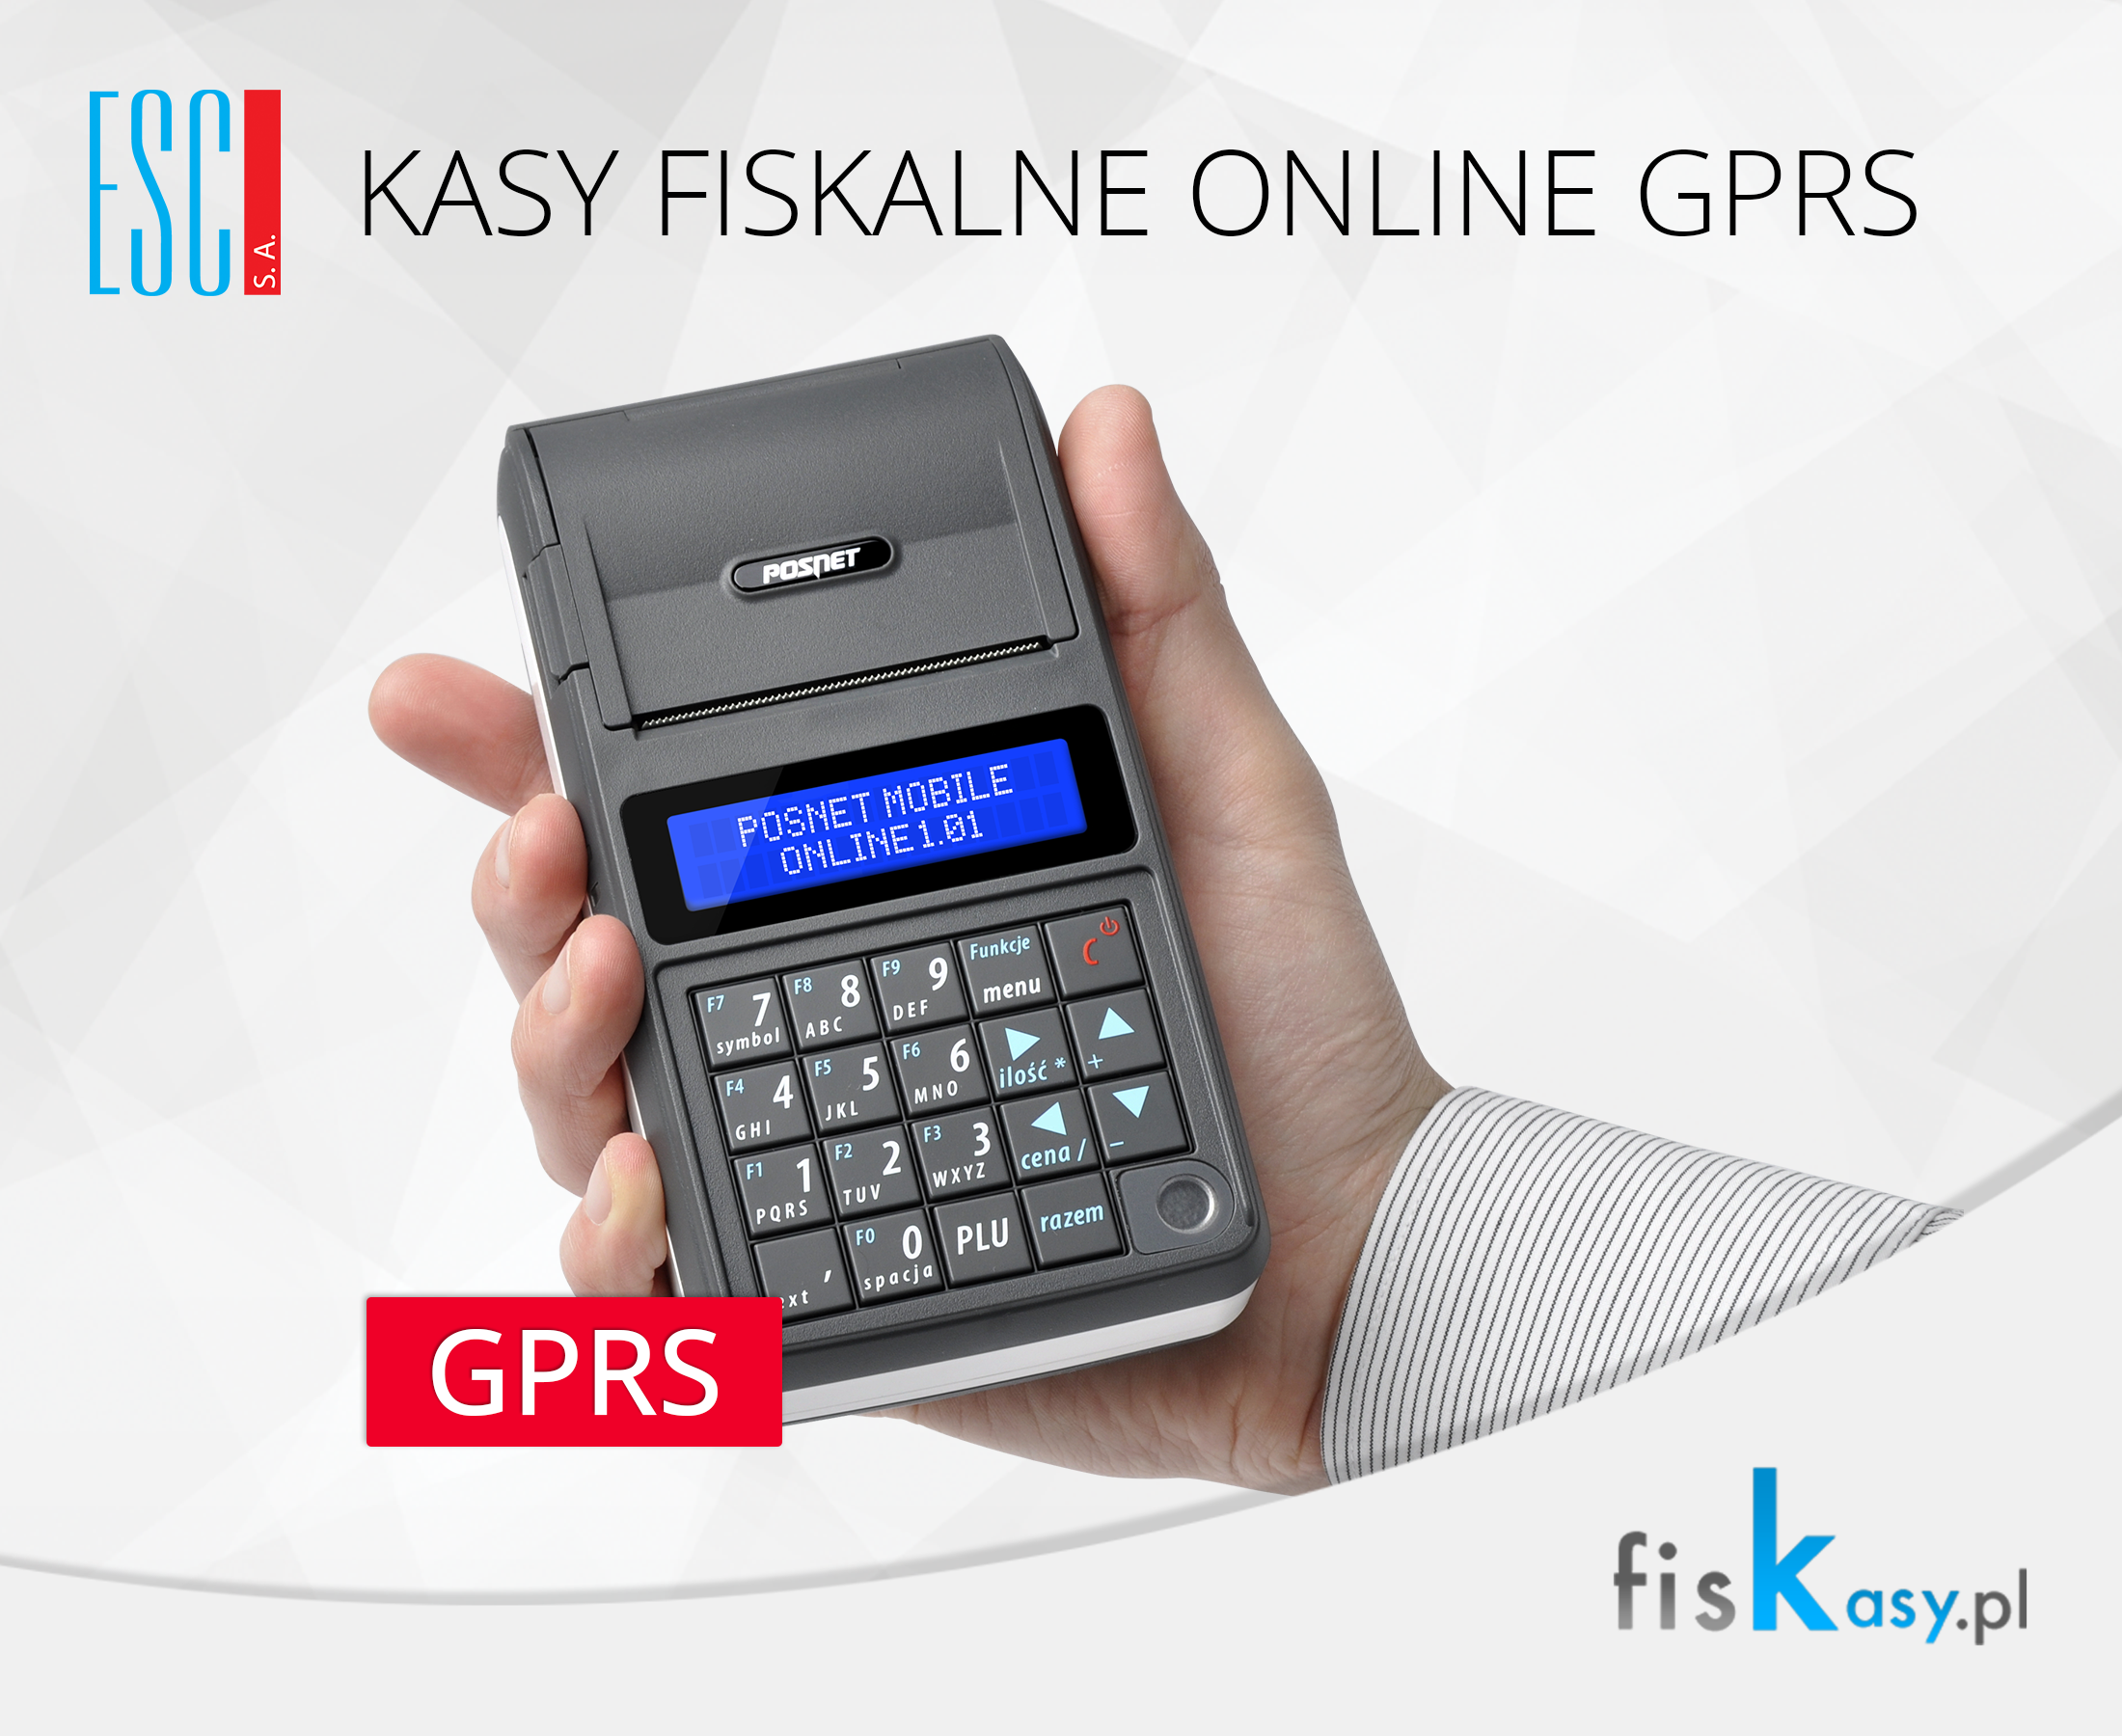 Obraz przedstawiąjacy kasy fiskalne z GPRS i GSM